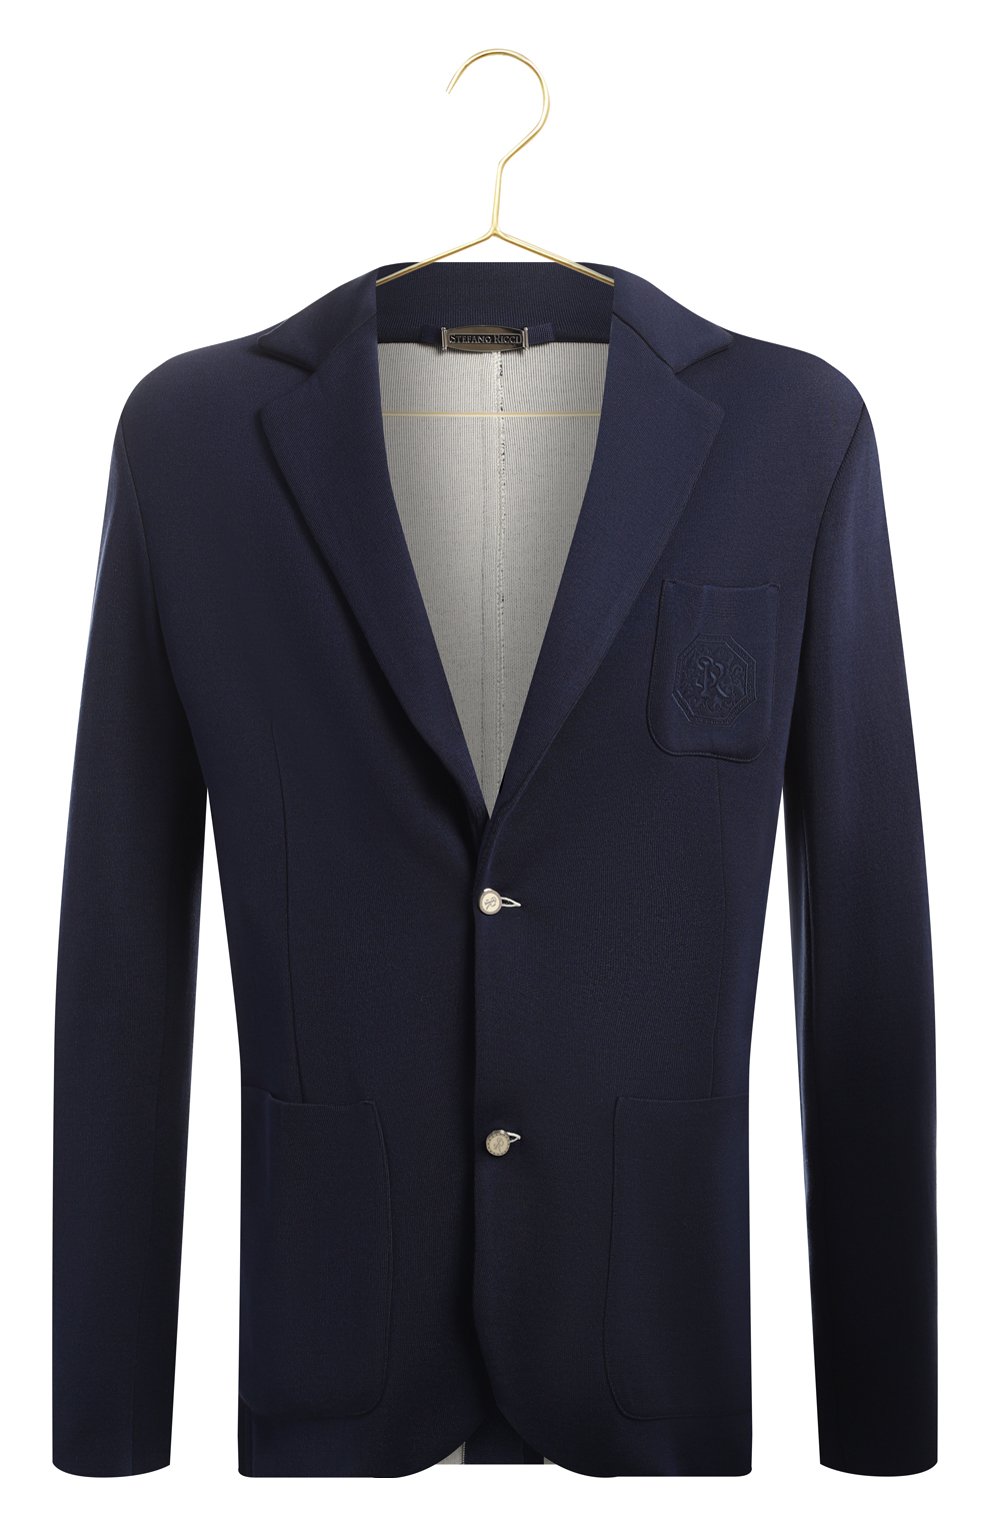 Шелковый пиджак | Stefano Ricci | Синий - 1